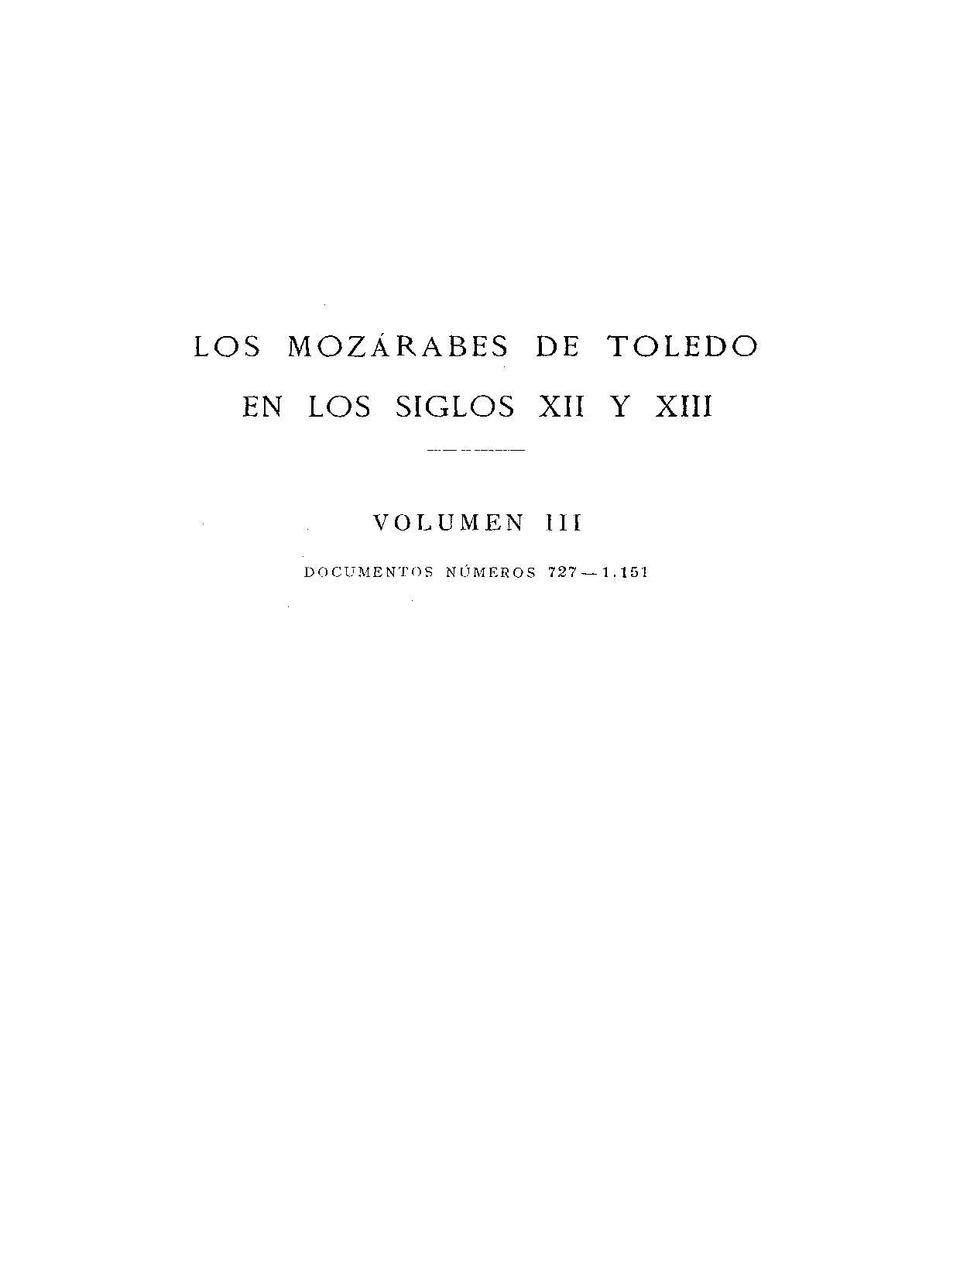 Los Mozárabes de Toledo en los siglos XII y XIII / Ángel González Palencia.-. [Monografía]